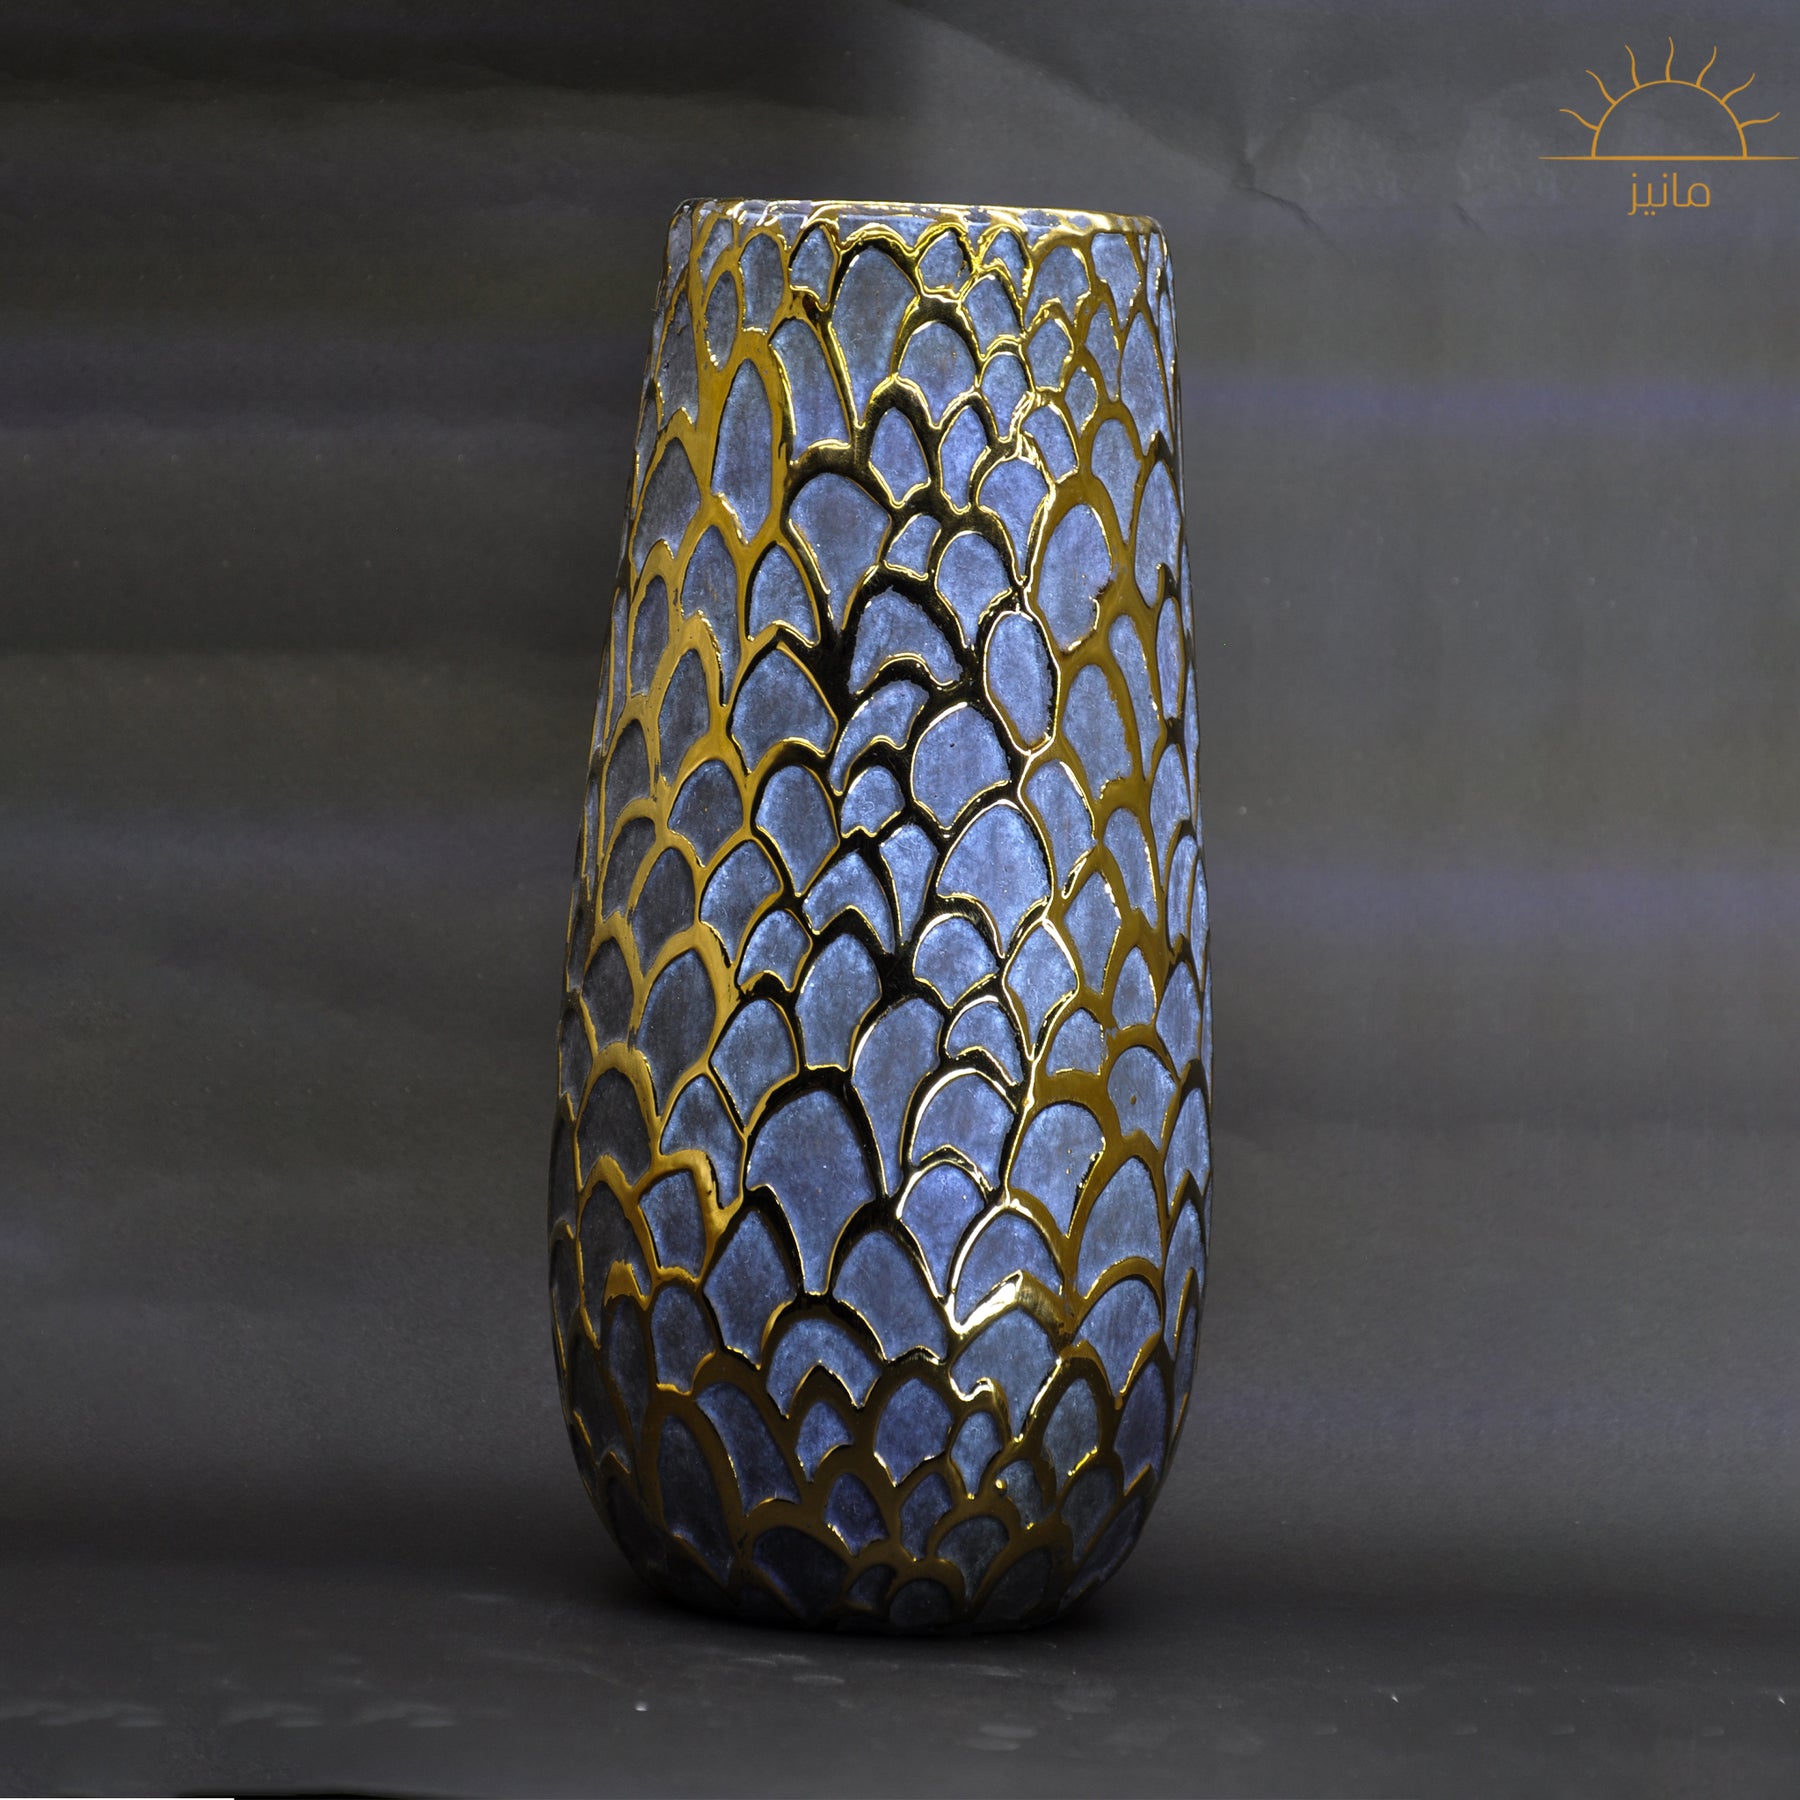 Grey Vase